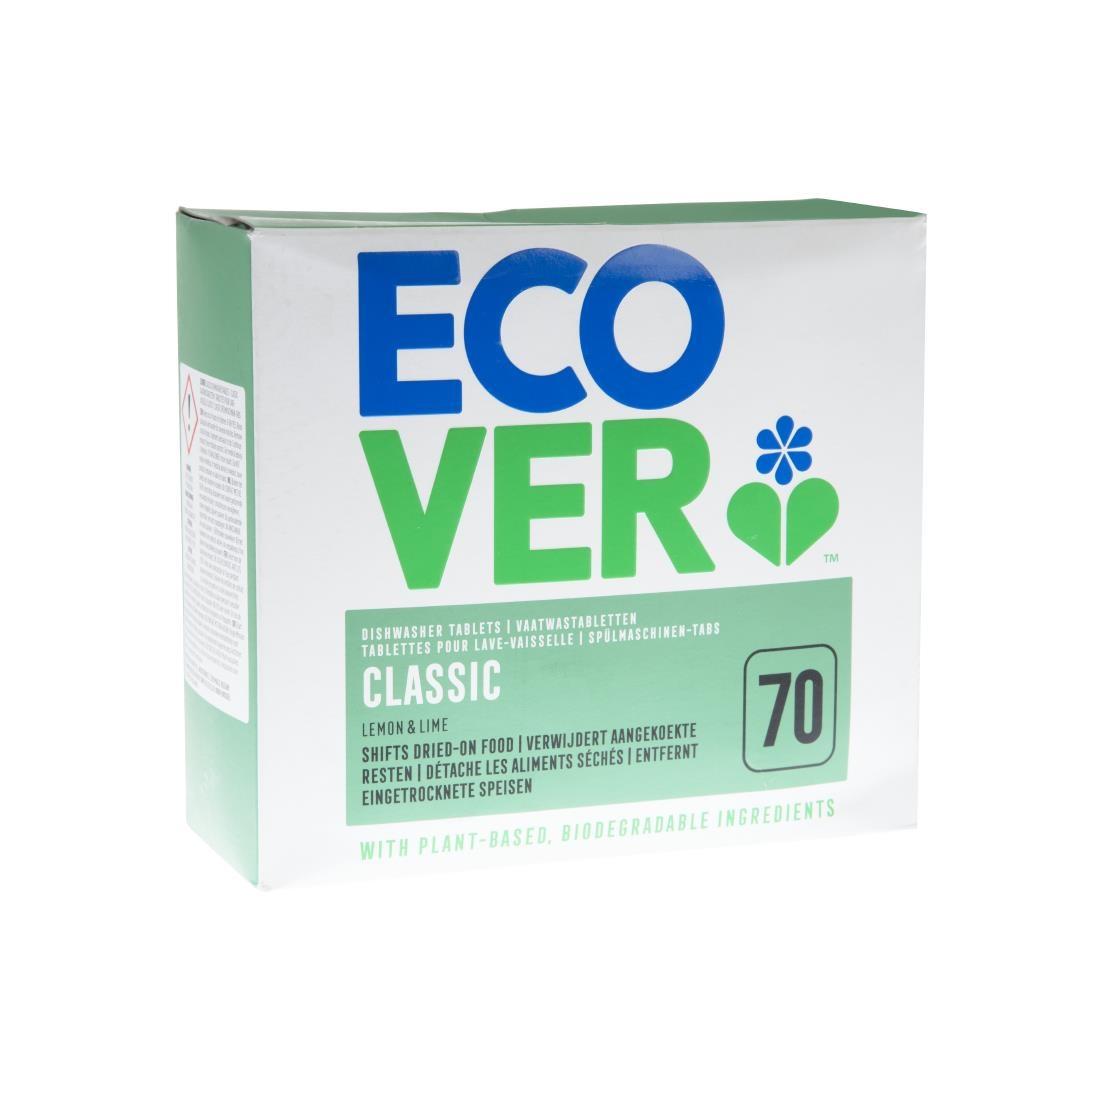 Ecover Dishwasher Detergent Tablets (70 Pack) - GG200  - 5